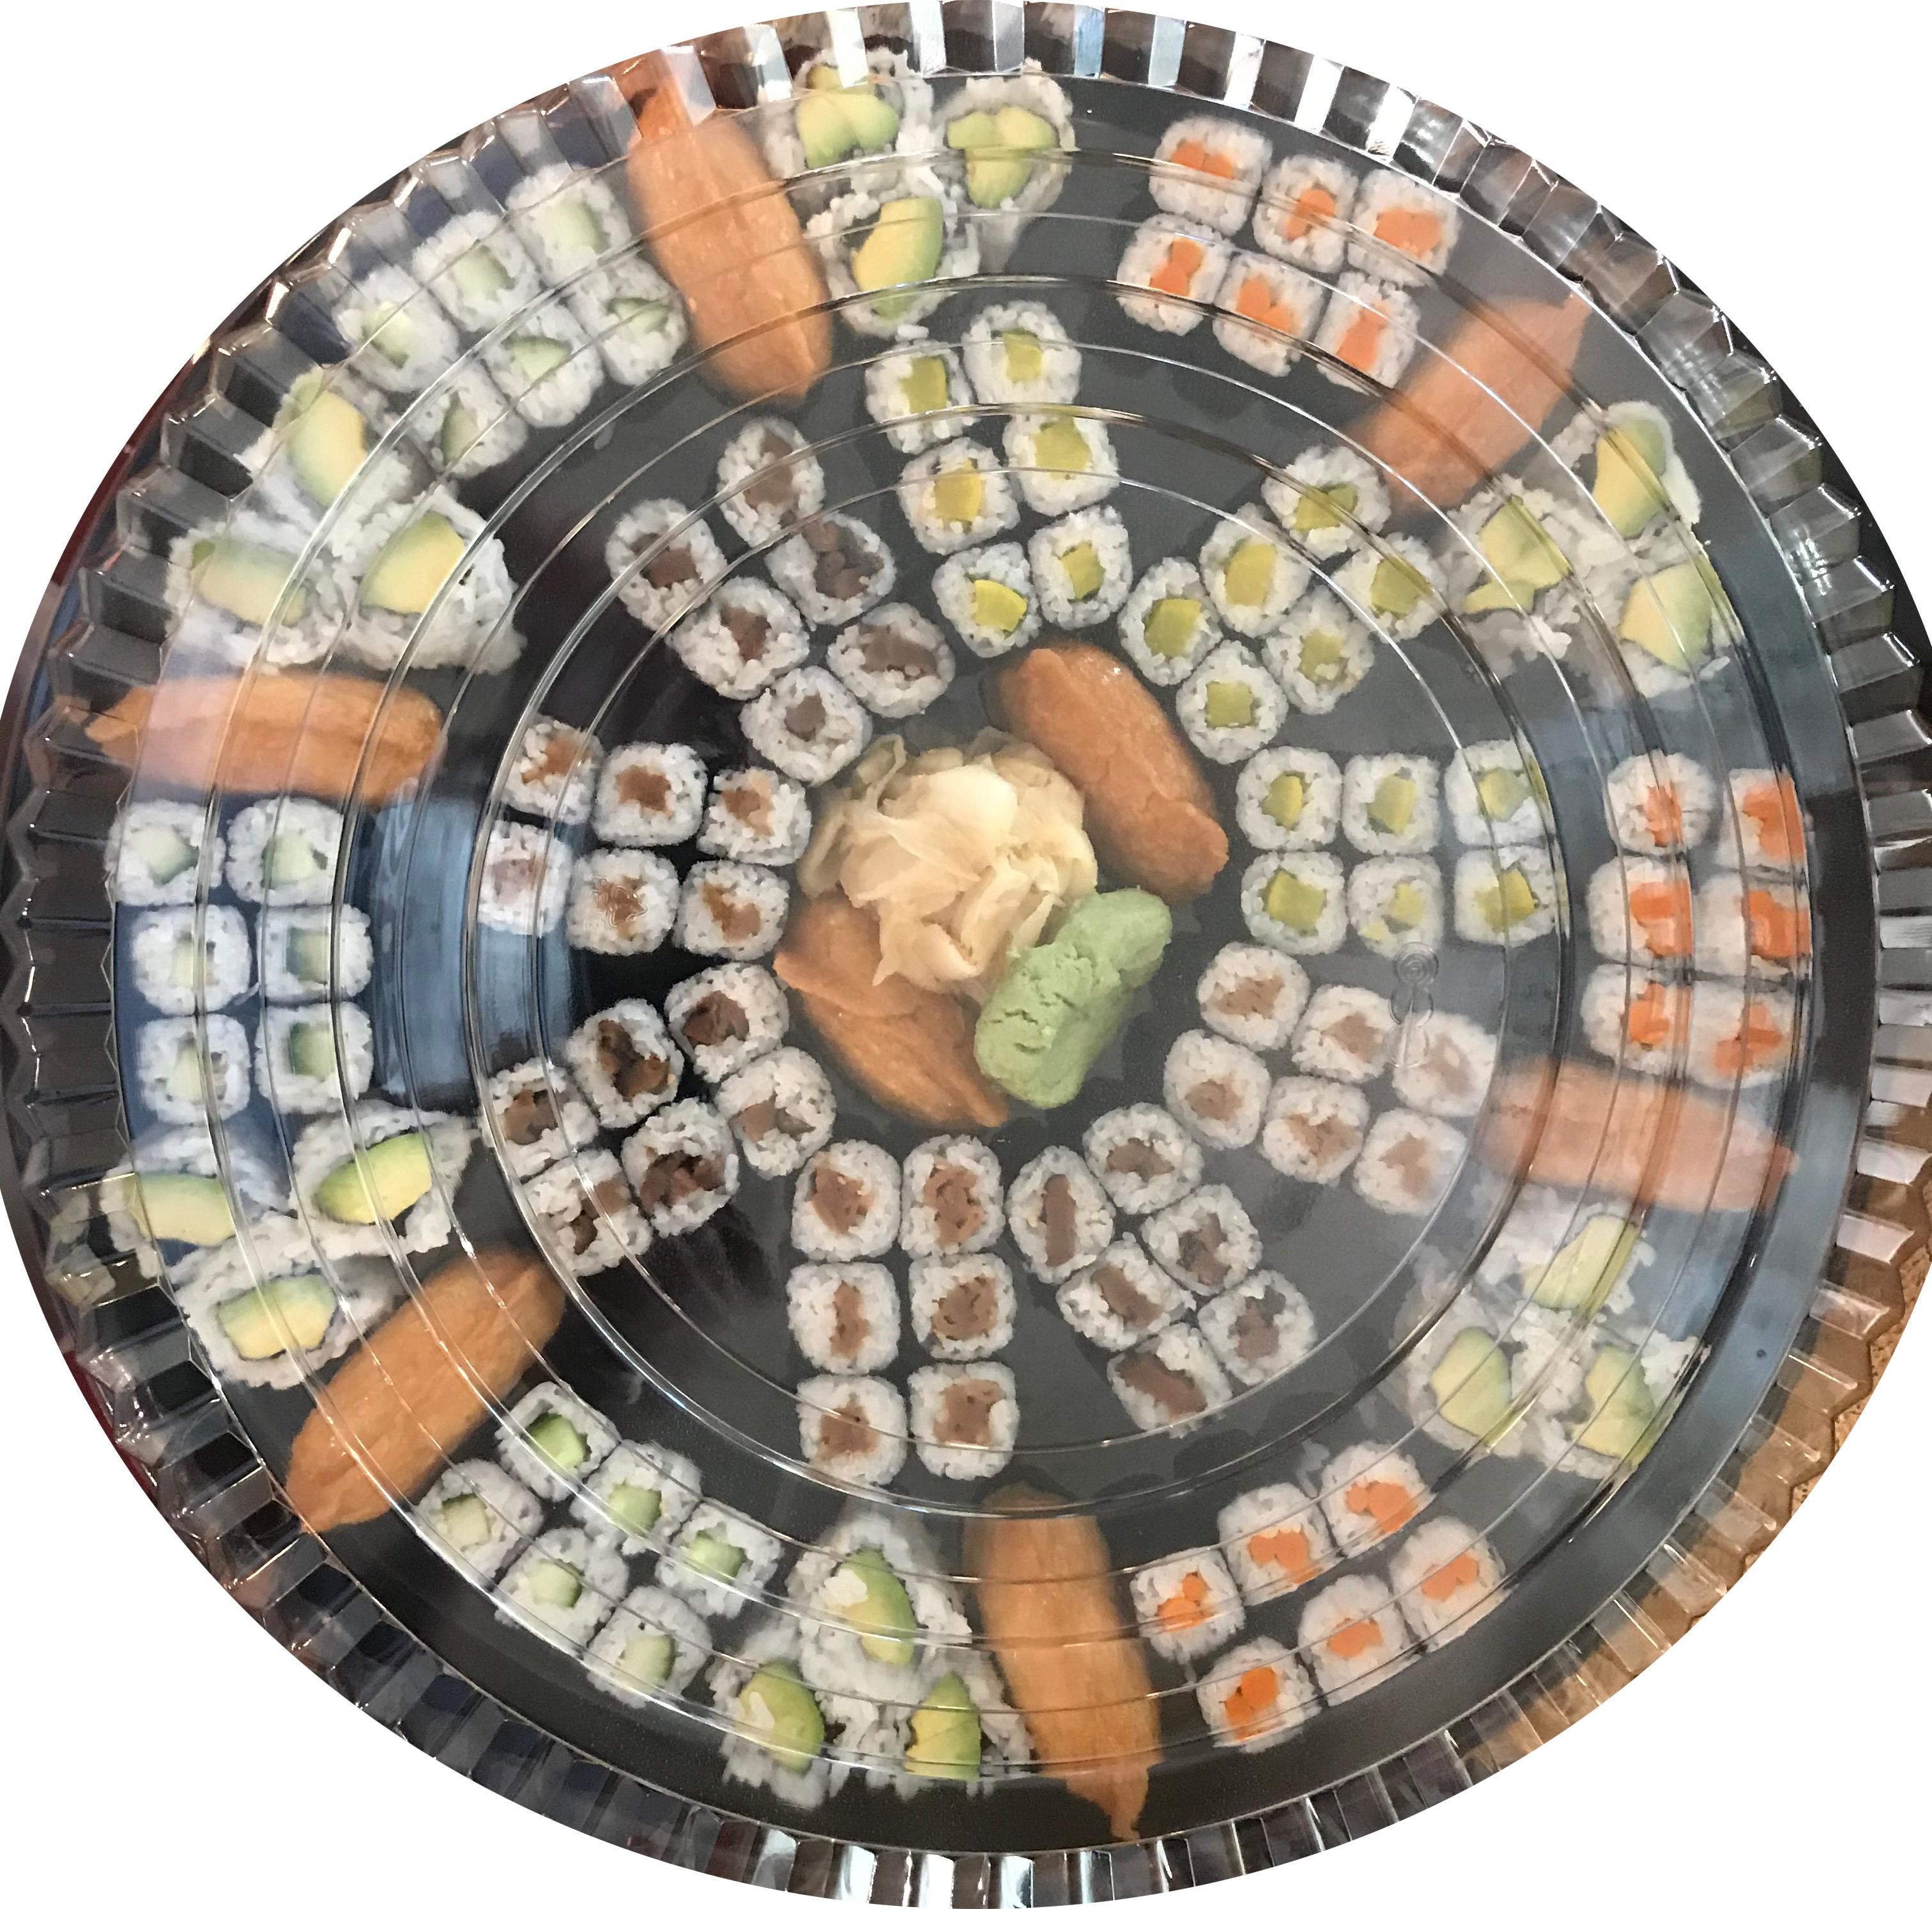 Vegetable Platter (98 pieces)